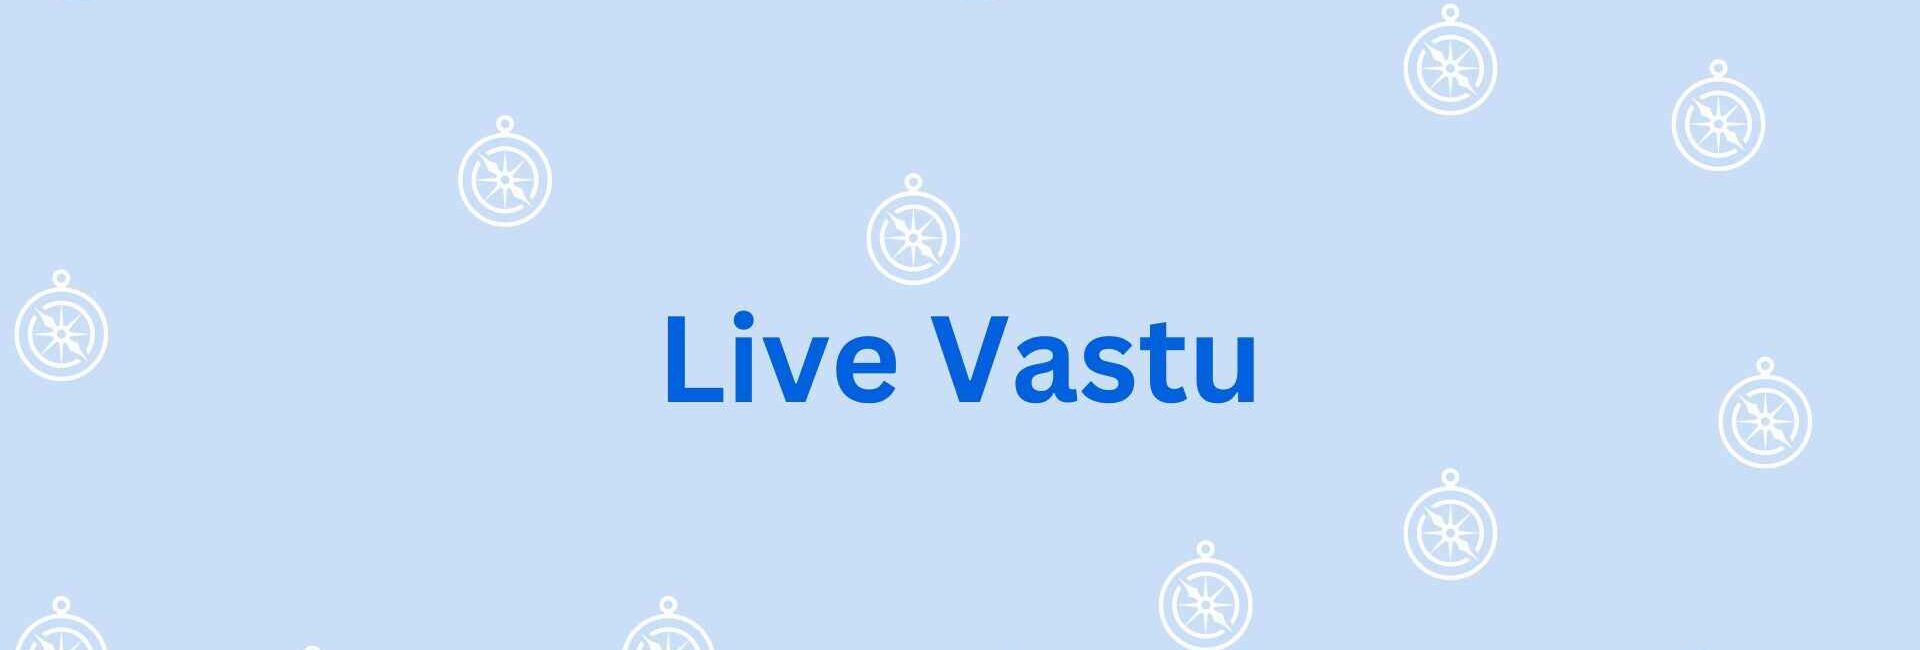 Live Vastu - Vastu shastra consultation in Noida